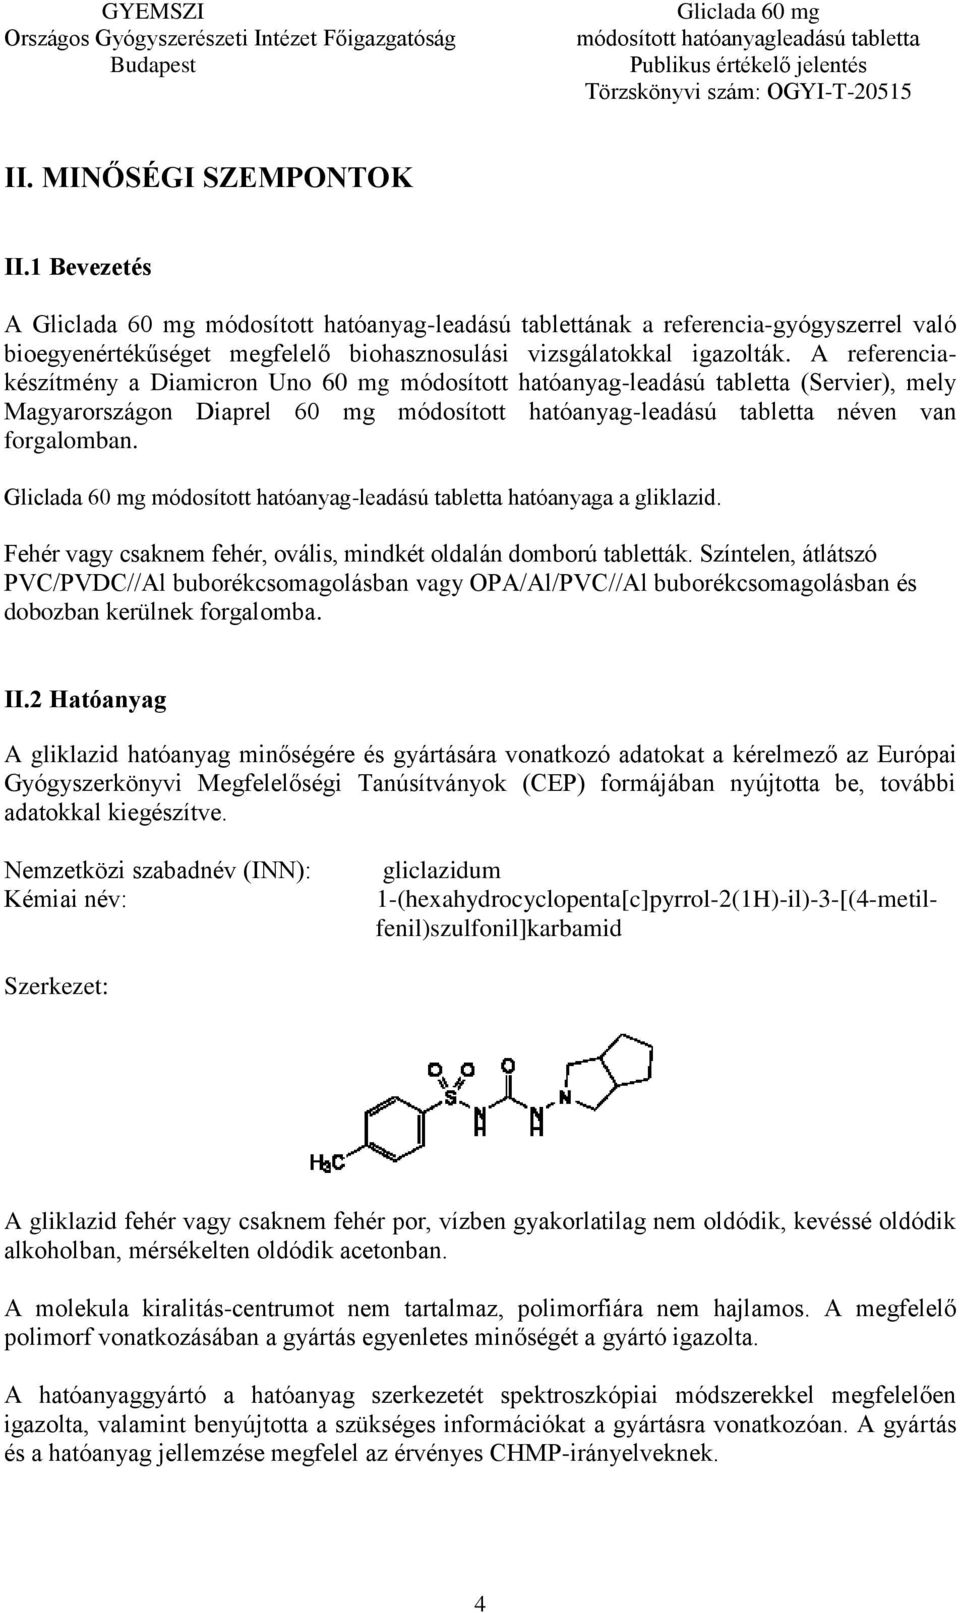 Gliclada 60 mg módosított hatóanyag-leadású tabletta hatóanyaga a gliklazid. Fehér vagy csaknem fehér, ovális, mindkét oldalán domború tabletták.